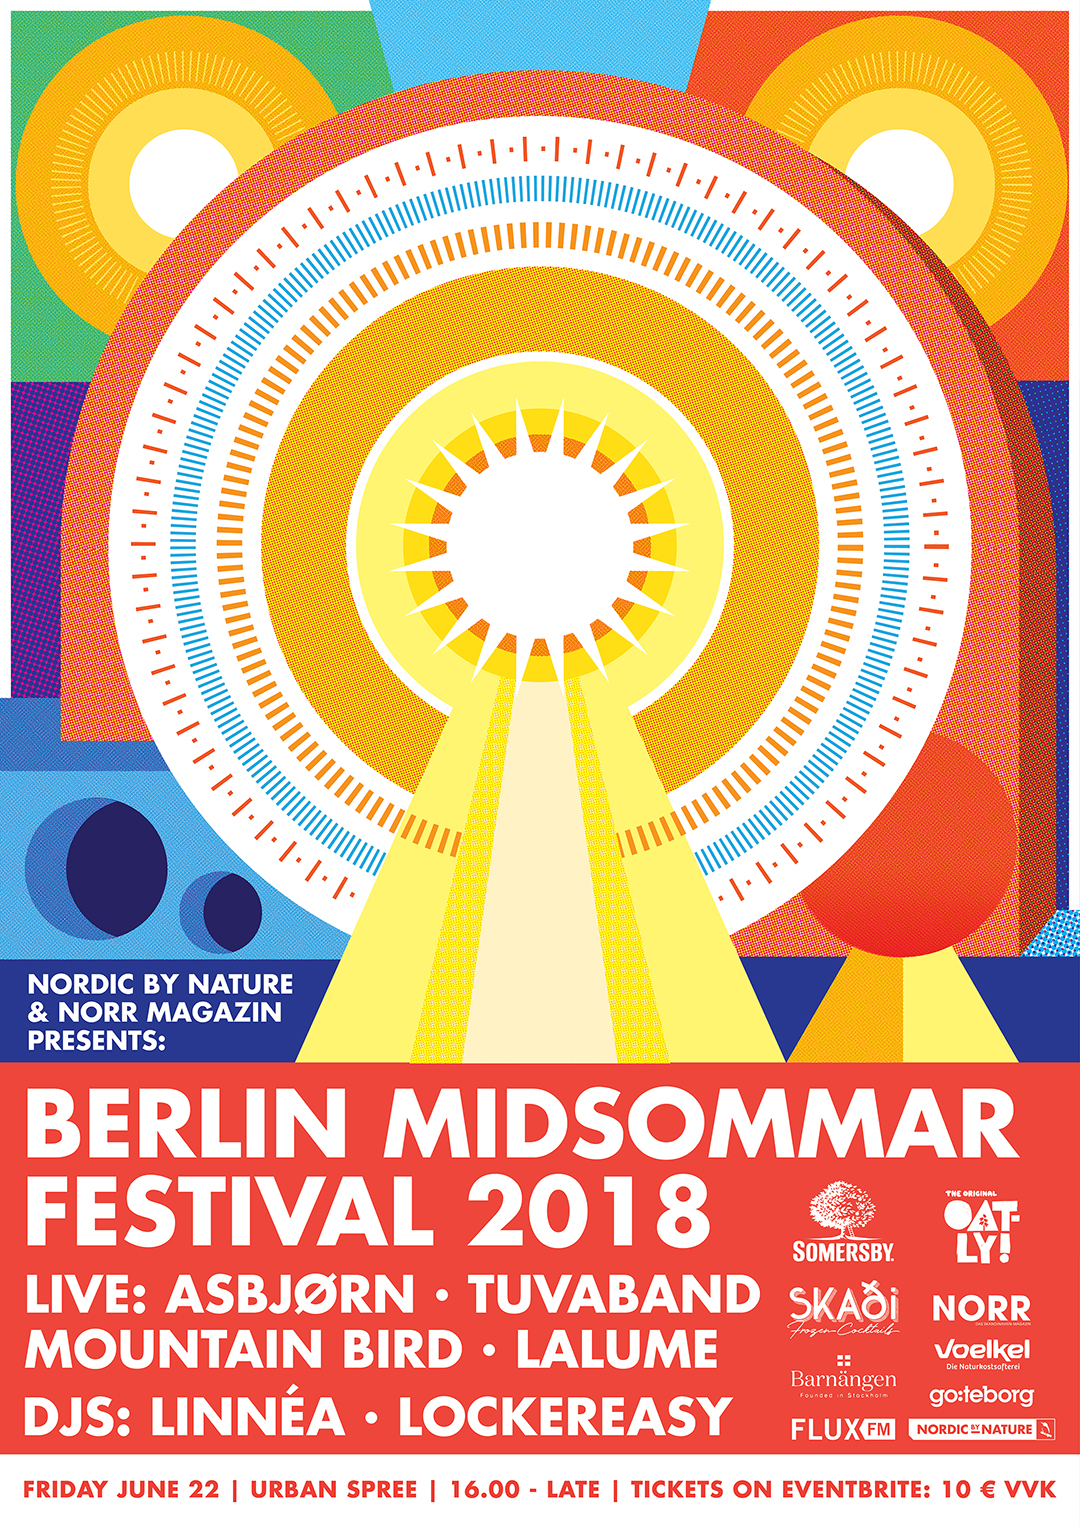 Berlin Midsommar Festival 2018